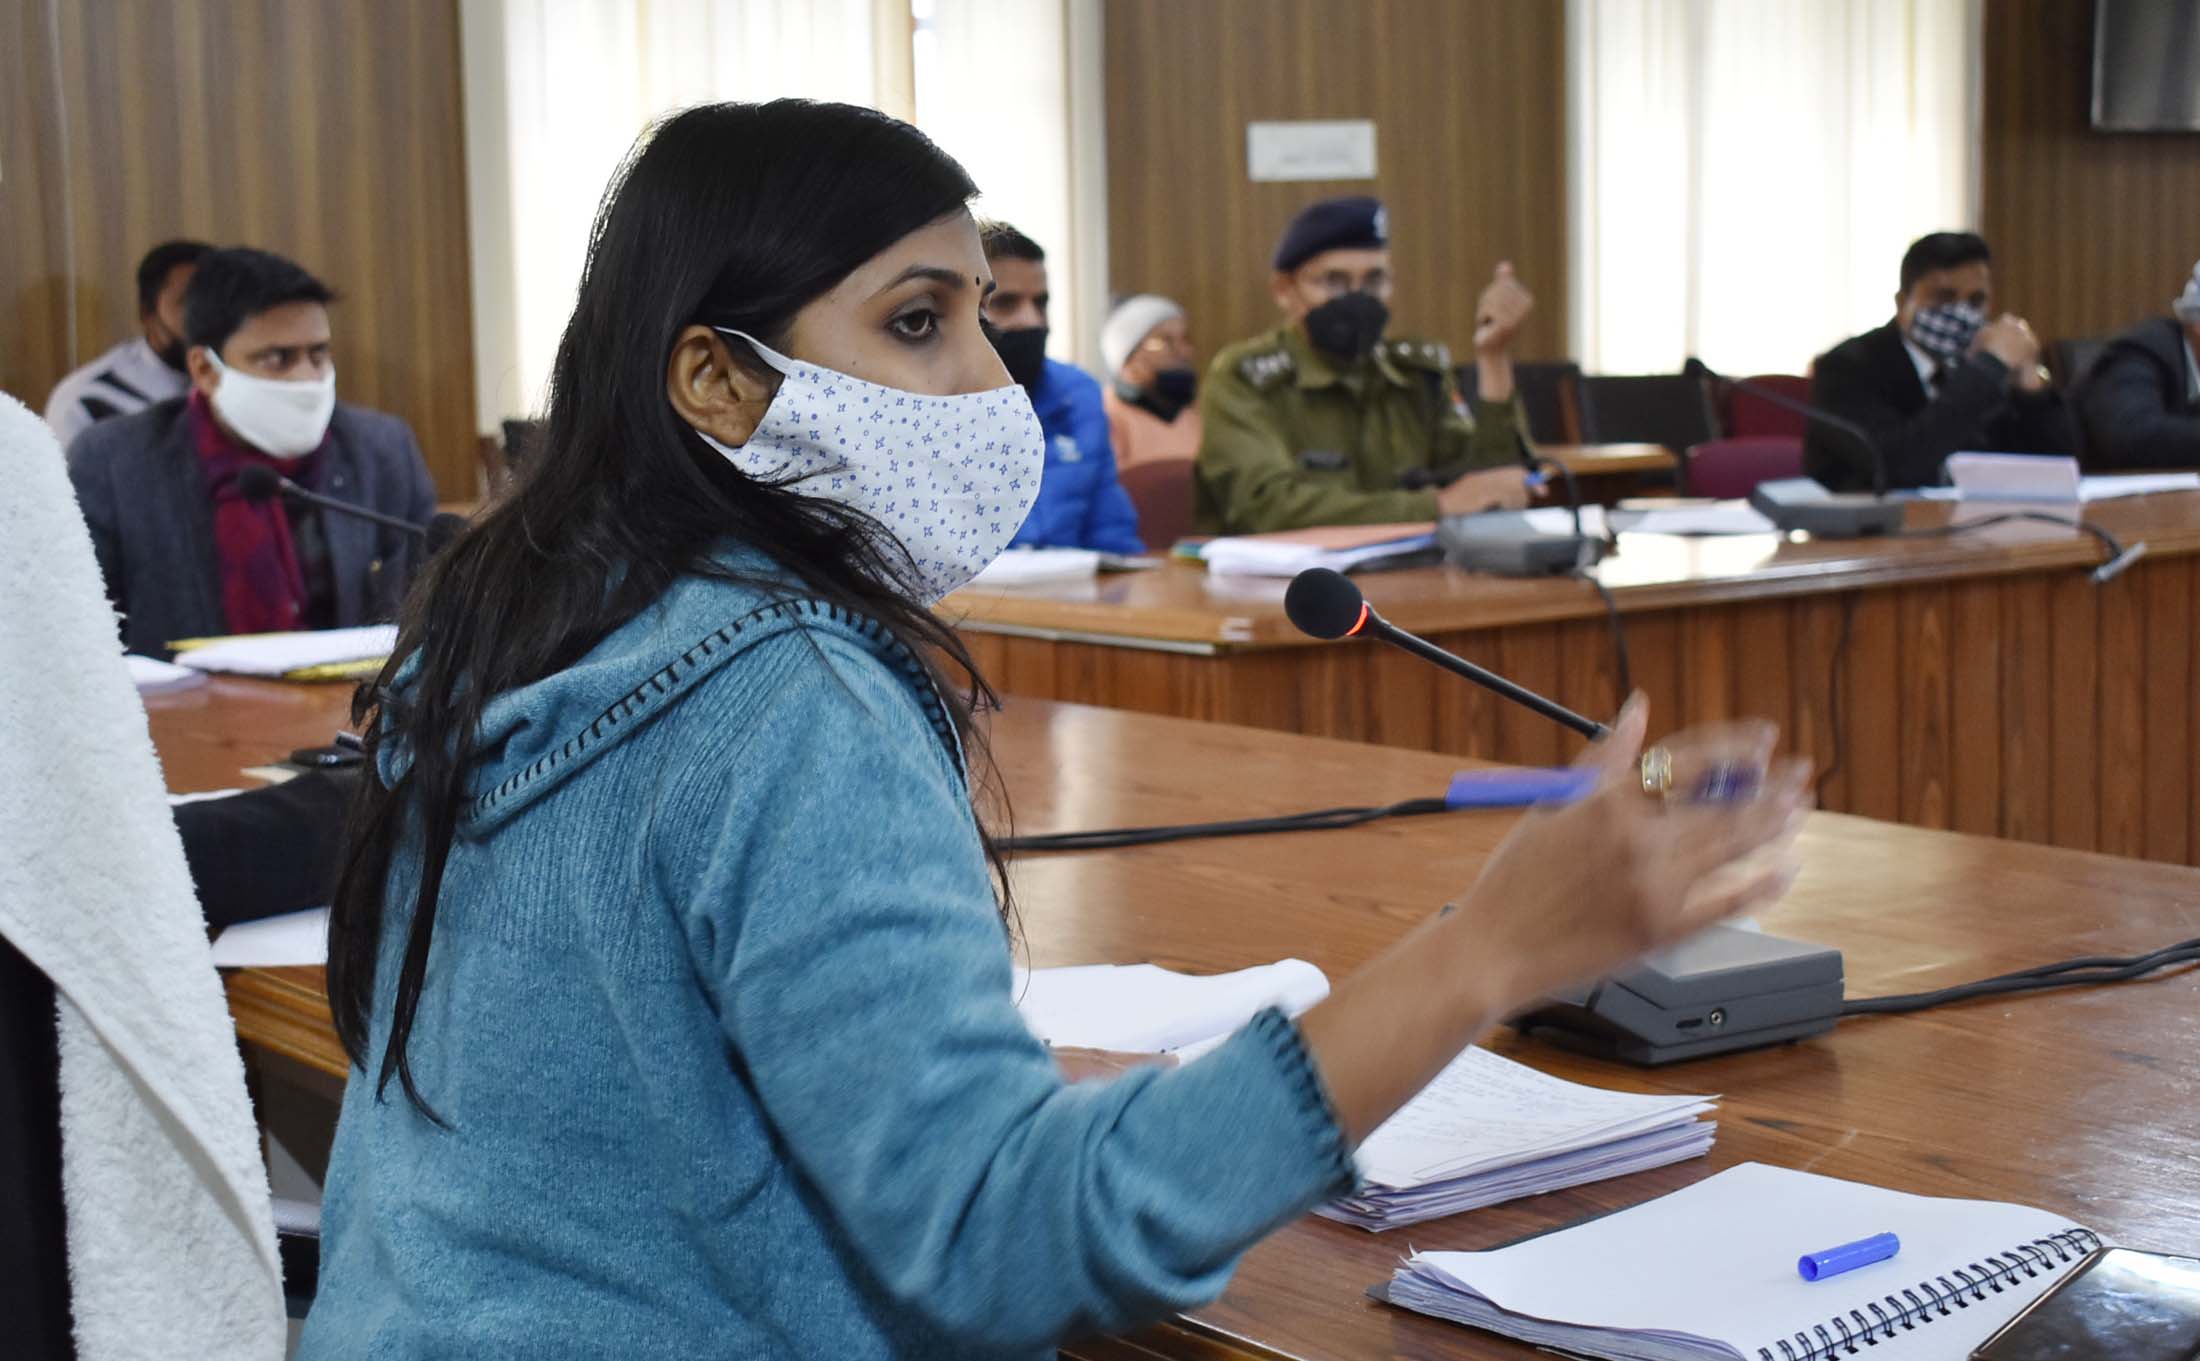 डीएम स्वाति भदौरिया ने की राजस्व विभाग की समीक्षा, वसूली के दिए निर्देश